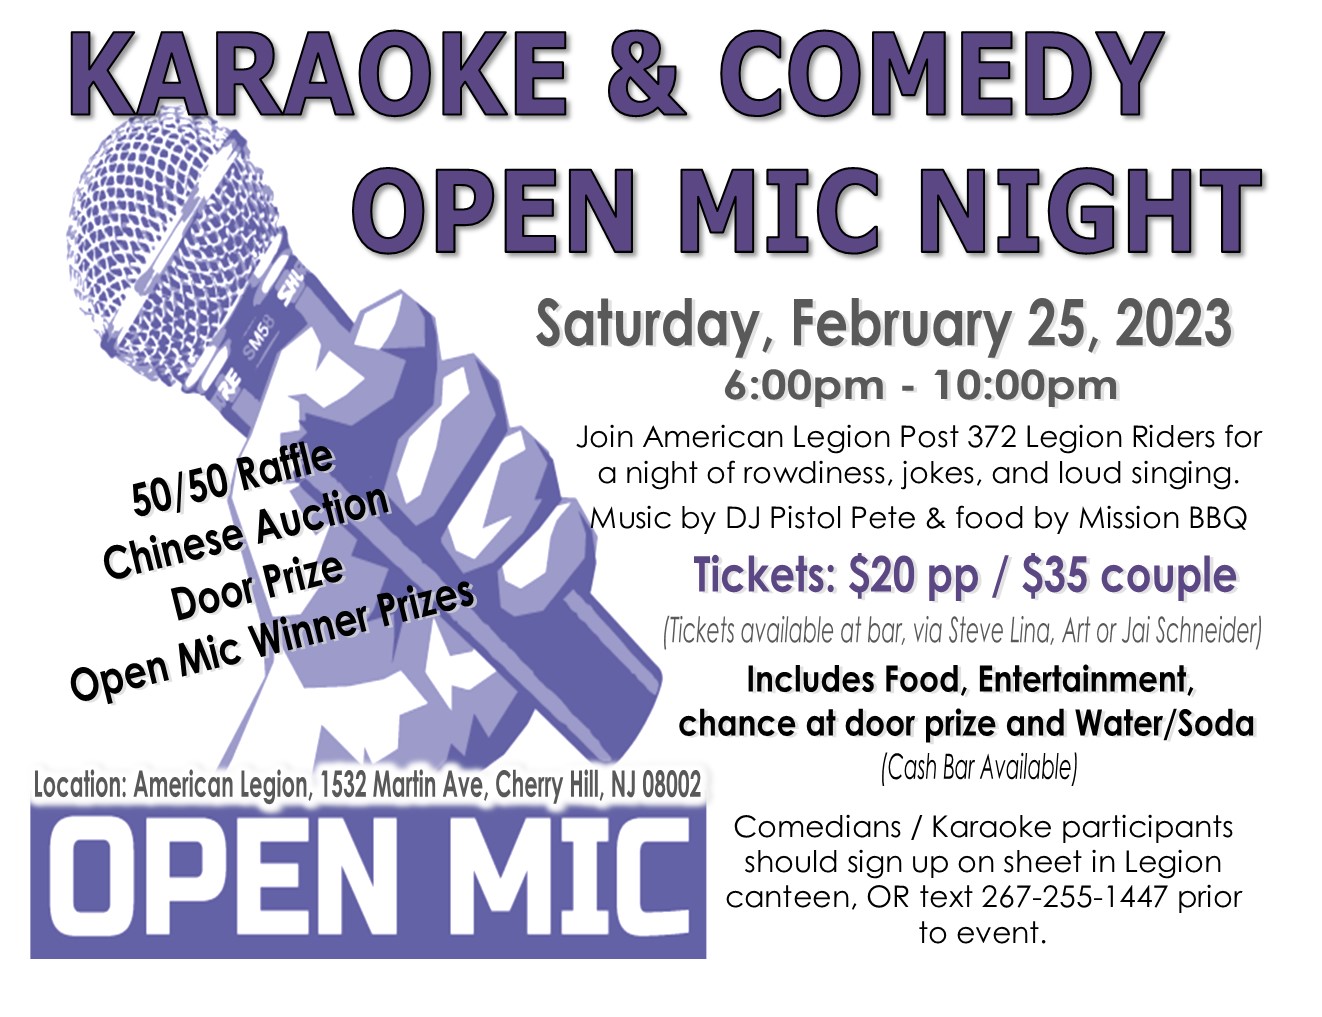 Riders Karaoke & Comedy Open Mic Night